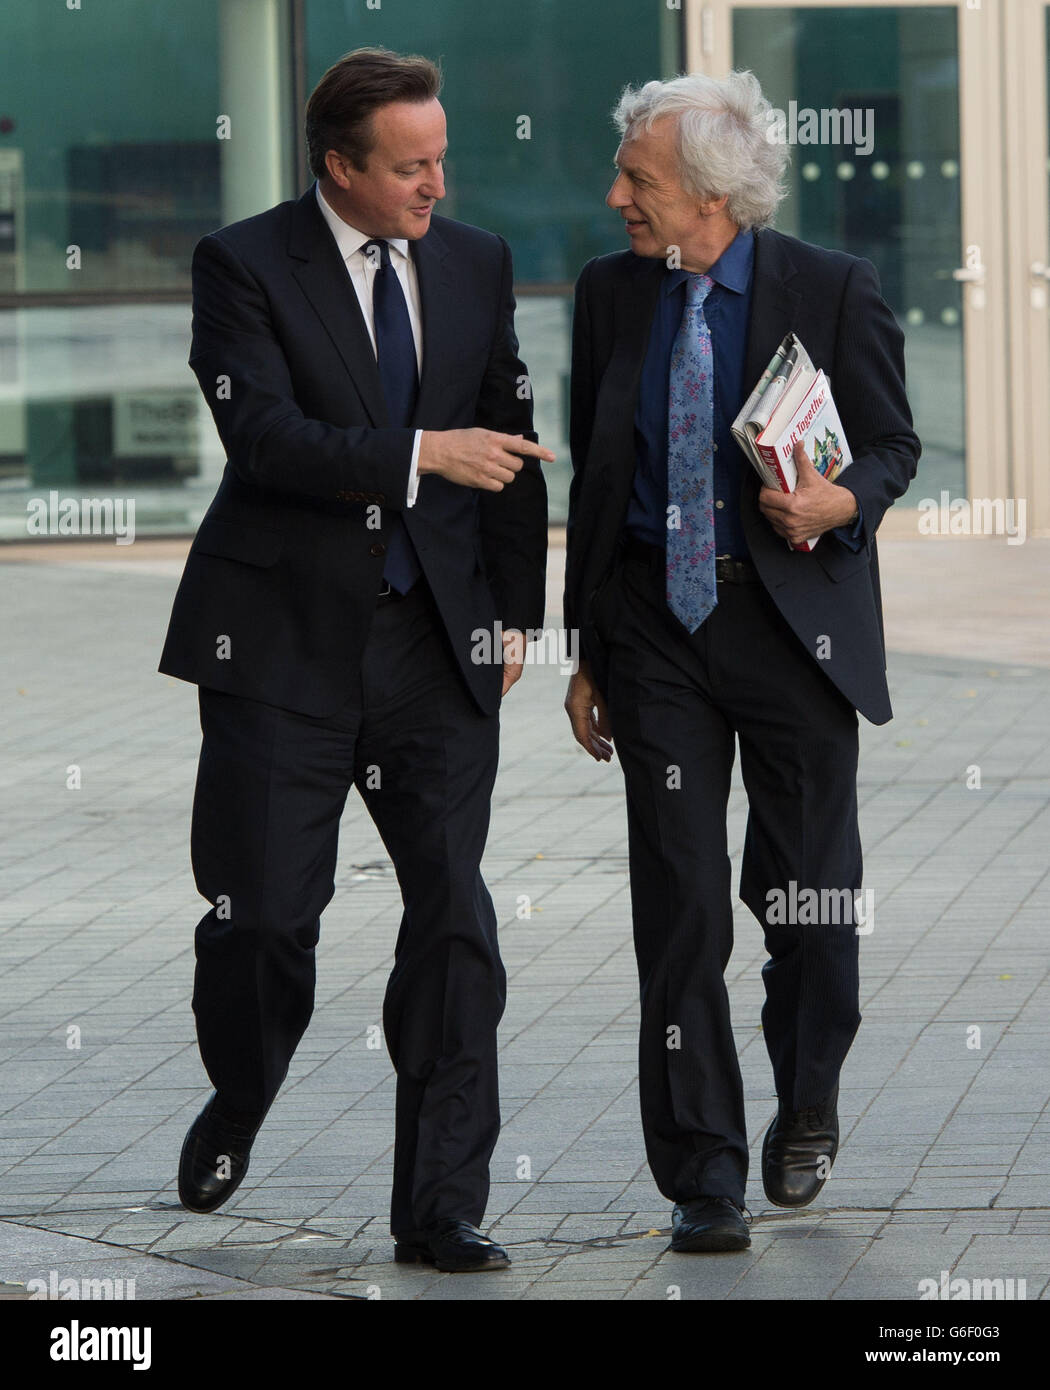 Le Premier ministre David Cameron (à gauche) arrive pour le programme des affaires courantes de la BBC, le spectacle Andrew Marr à Manchester, avant le début de la conférence annuelle du Parti conservateur. Banque D'Images